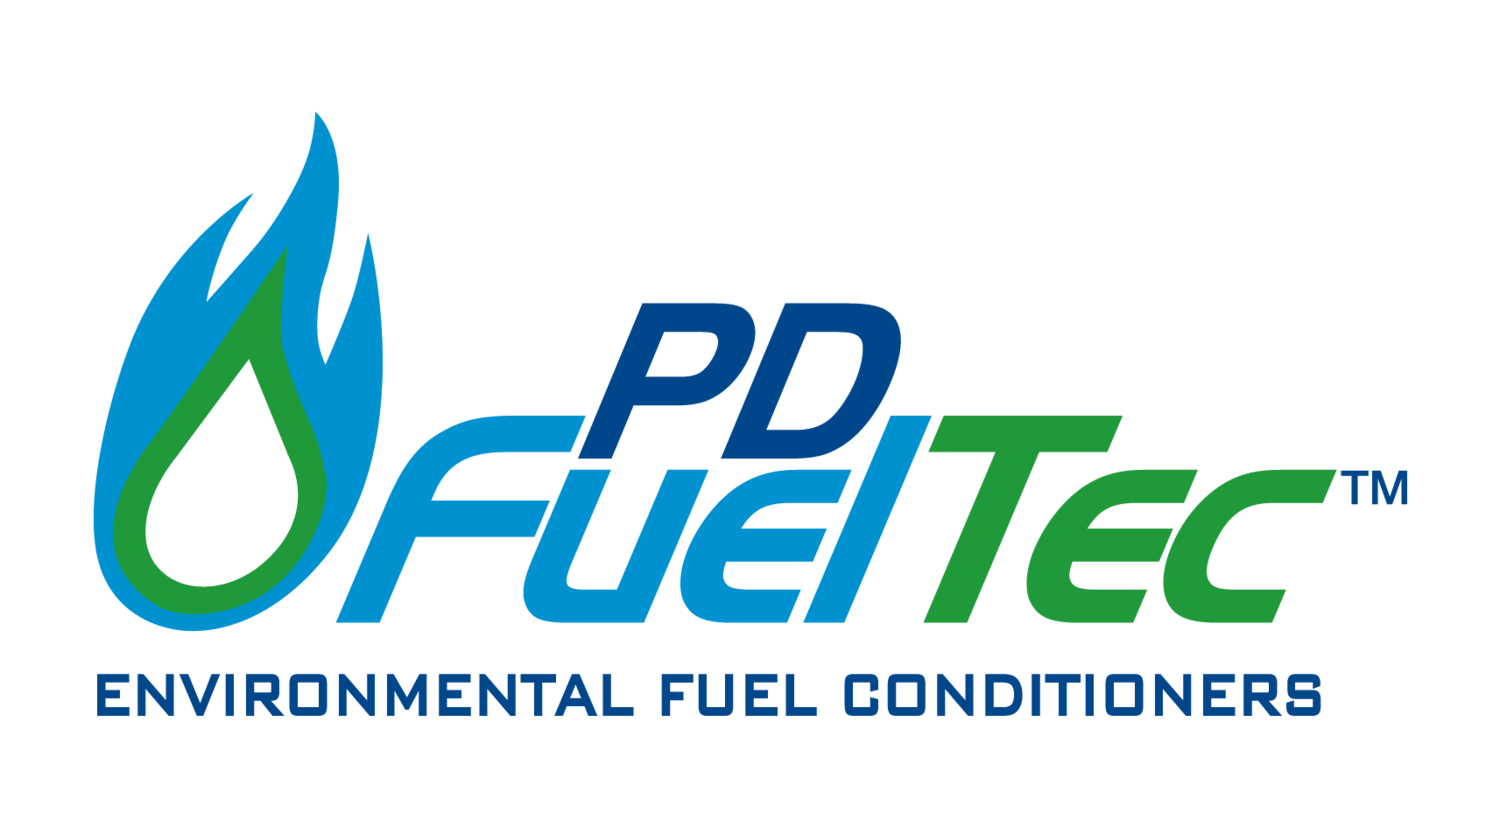 Fuel-Tec Limited